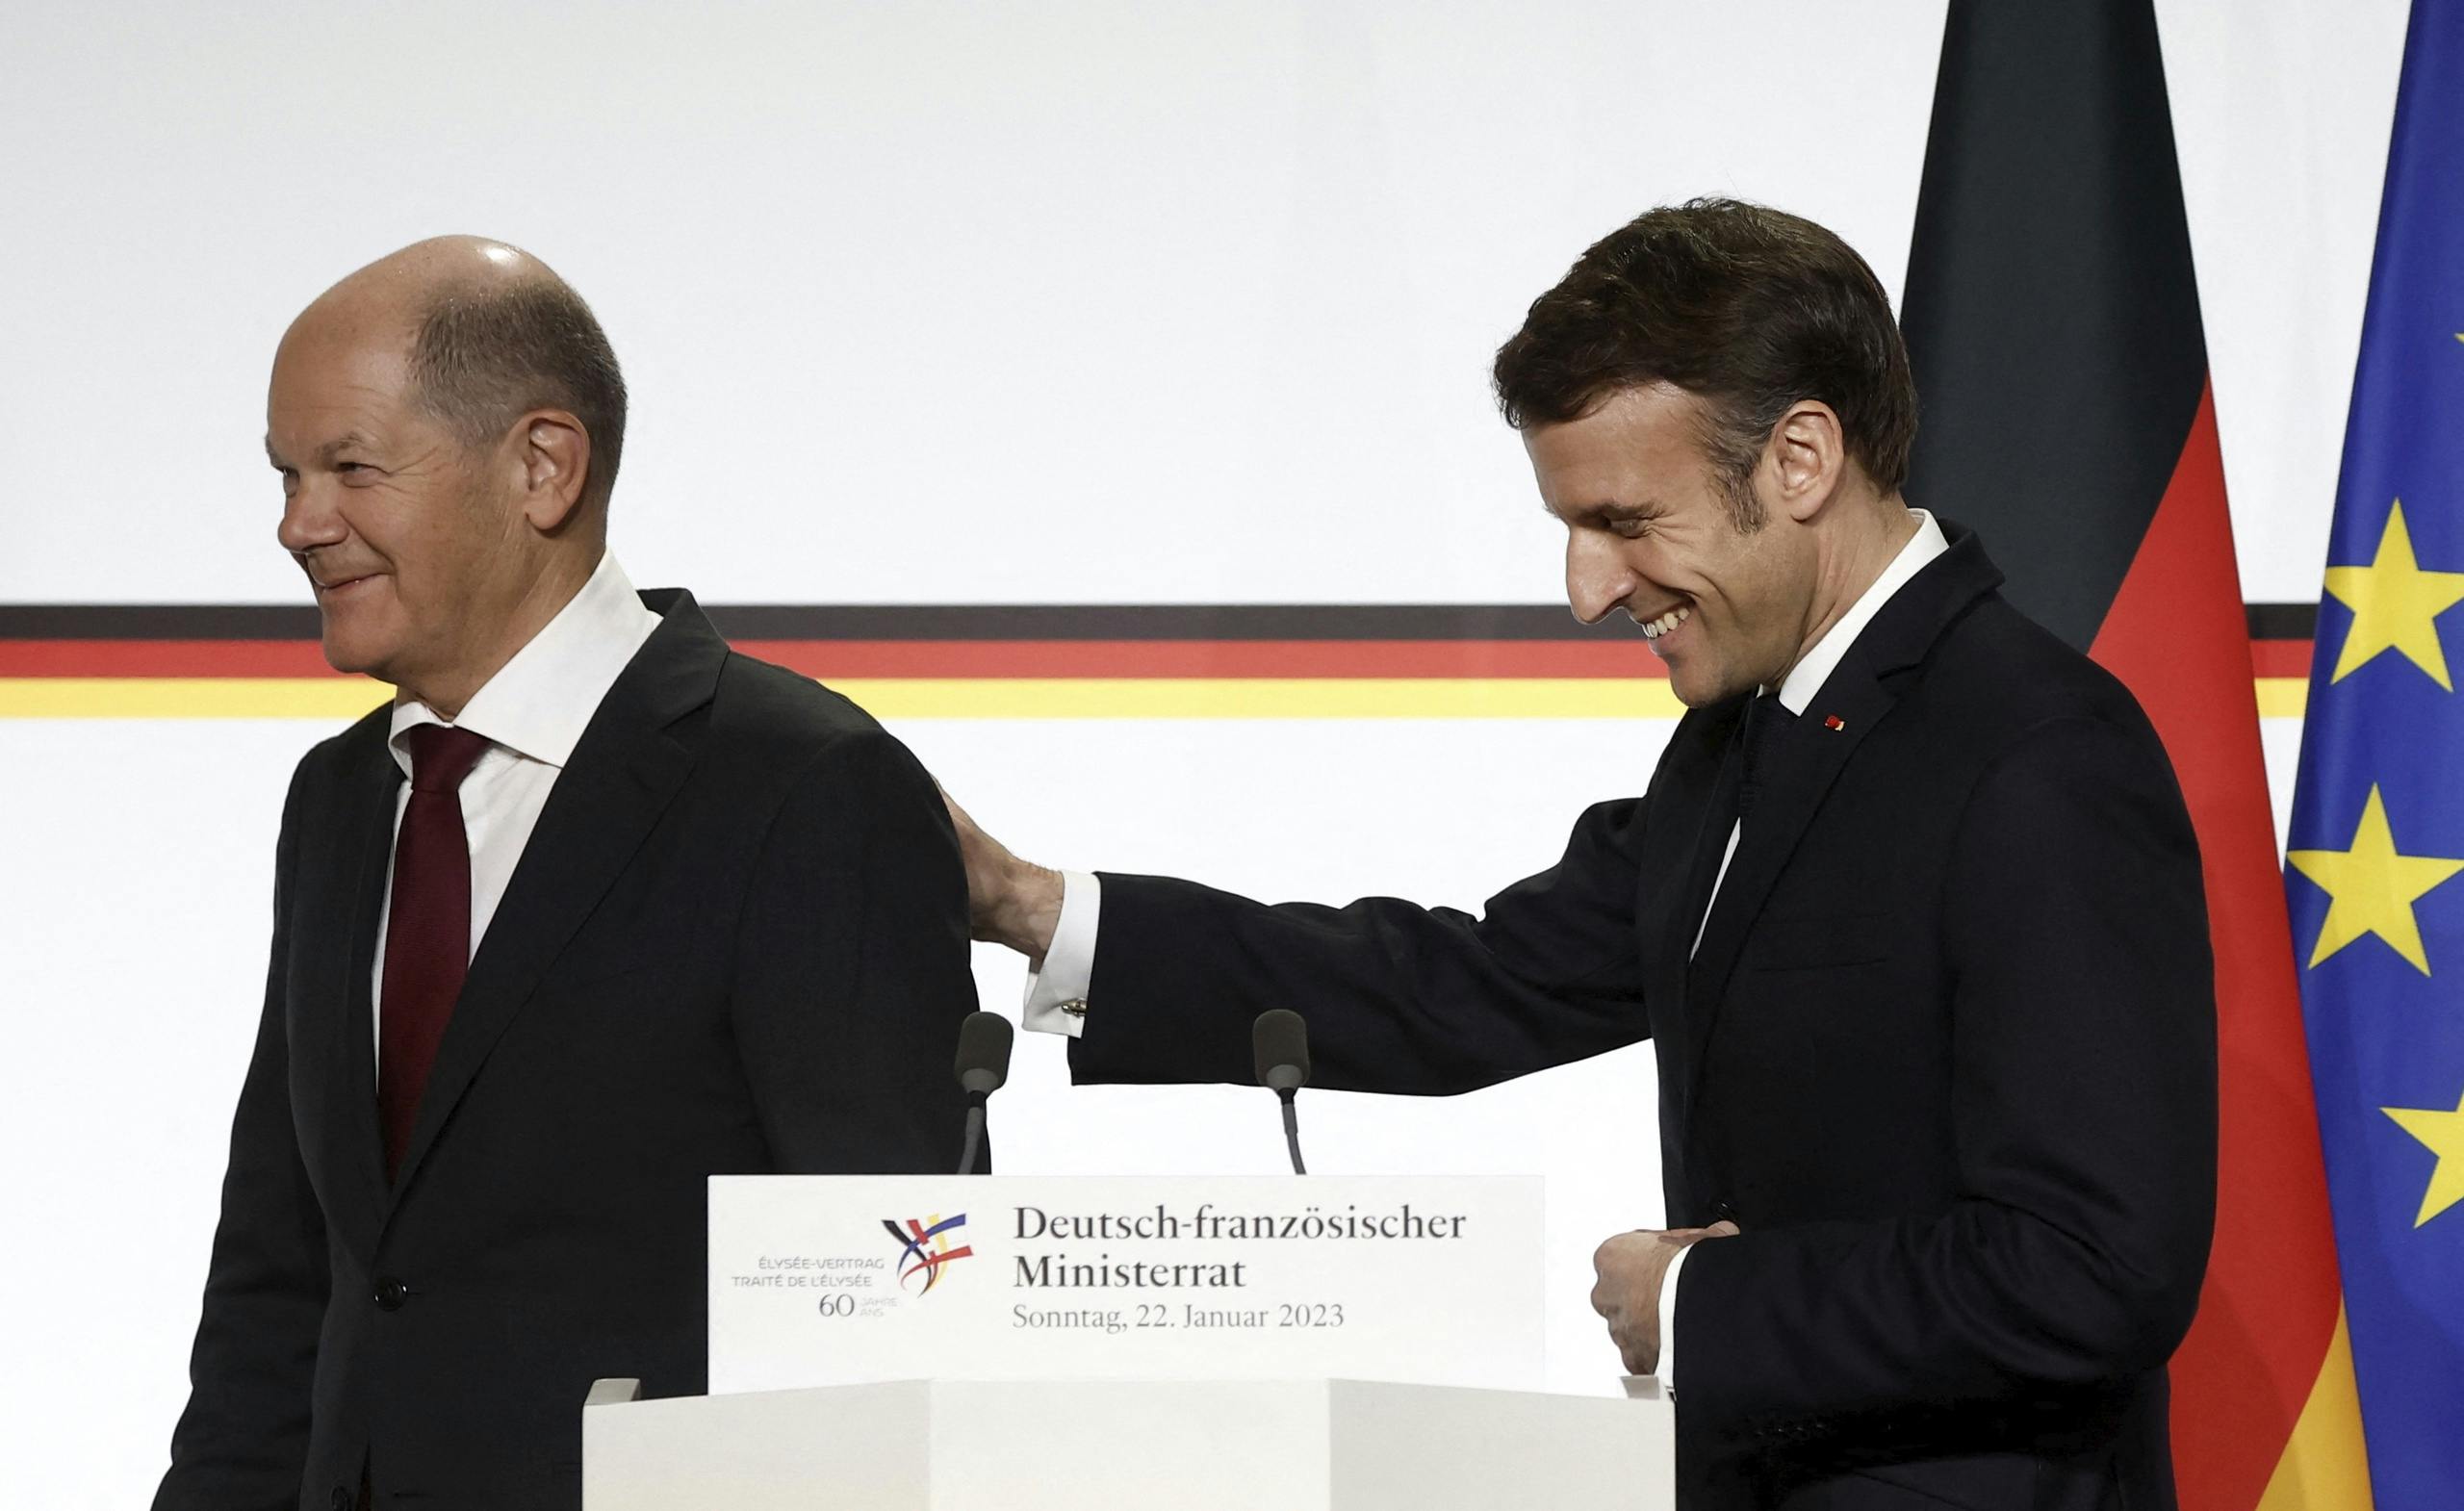 Frankreich und Deutschland schlossen eine Scheinehe